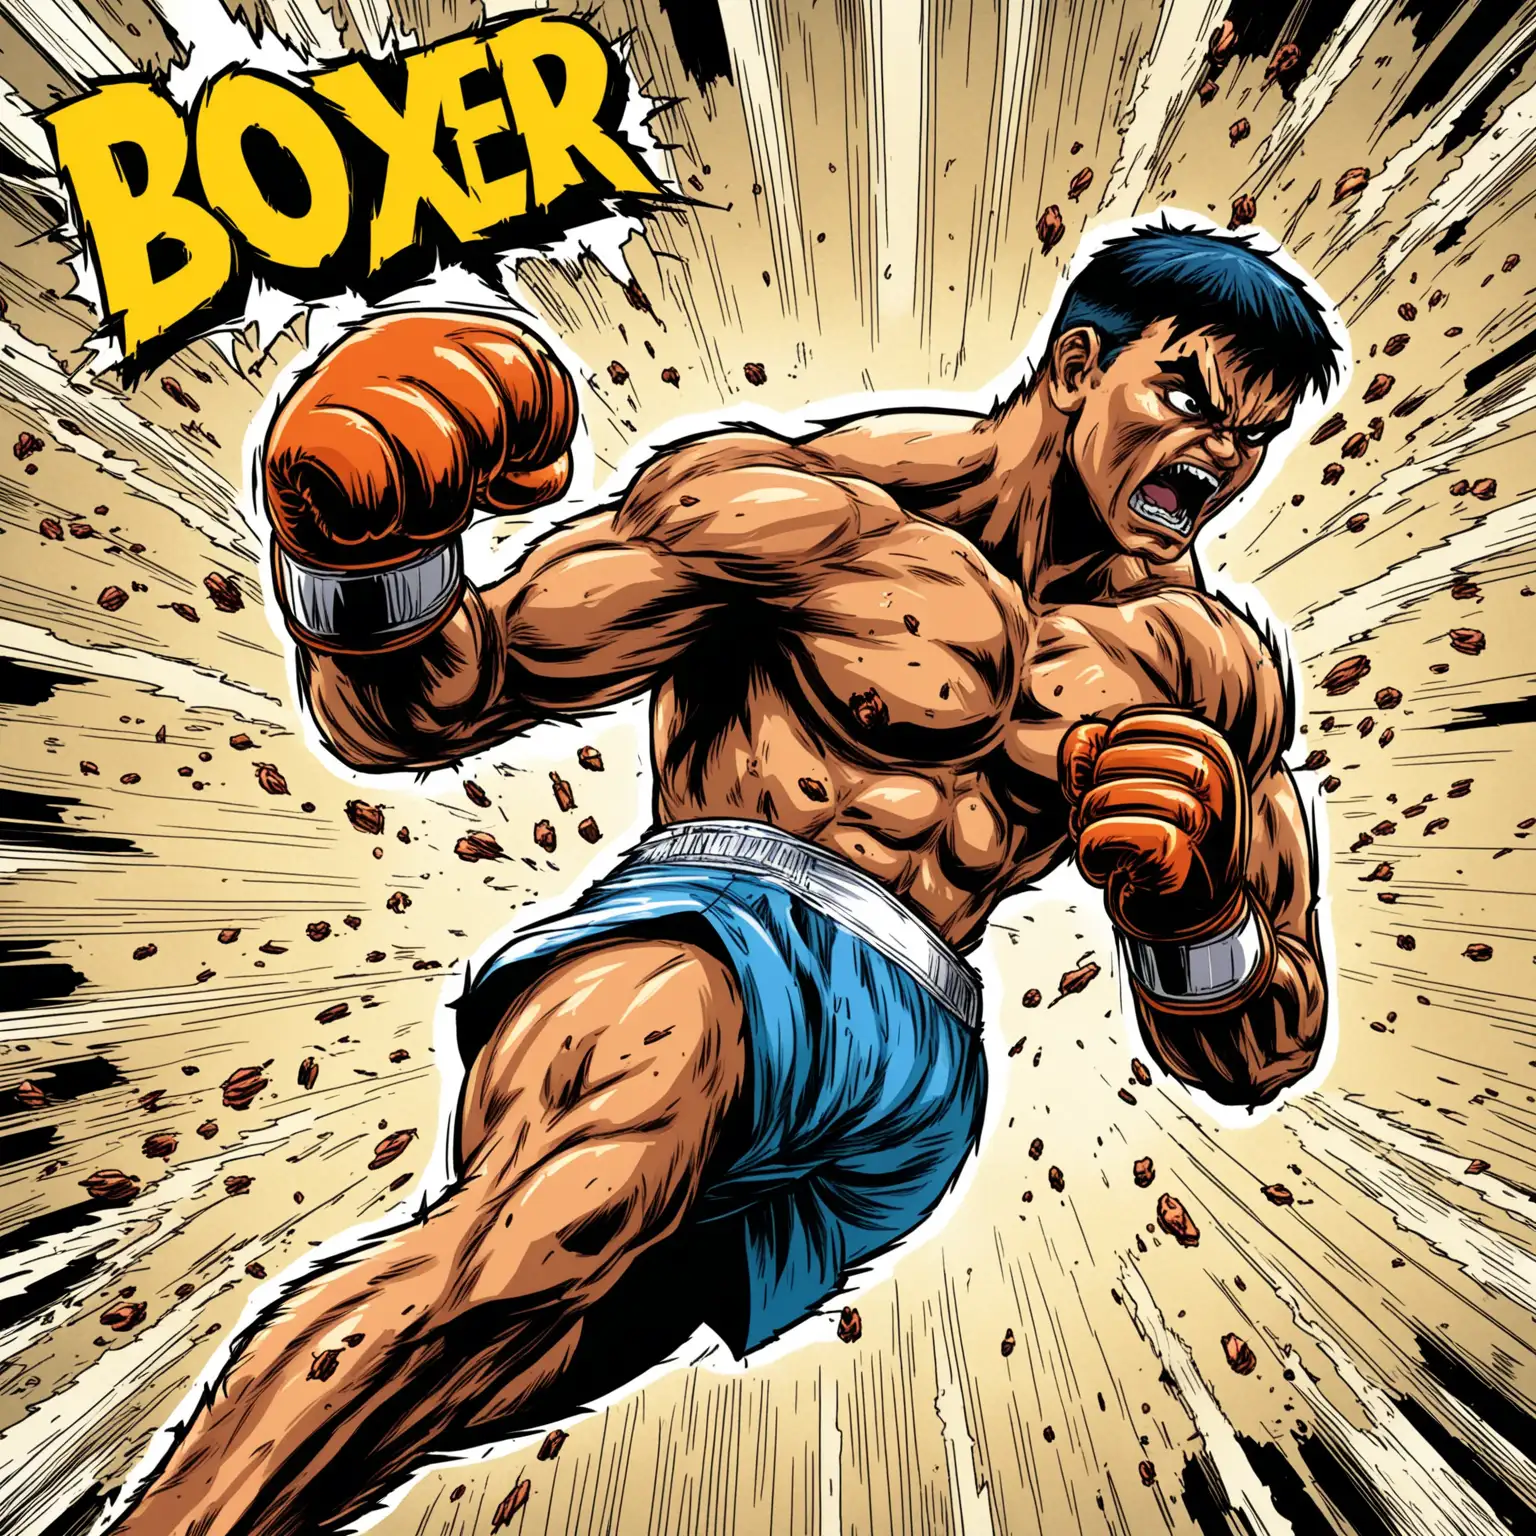 dans un style bande dessinée:
un boxeur qui donne un crochet dévastateur chargé d'une puissance explosive.